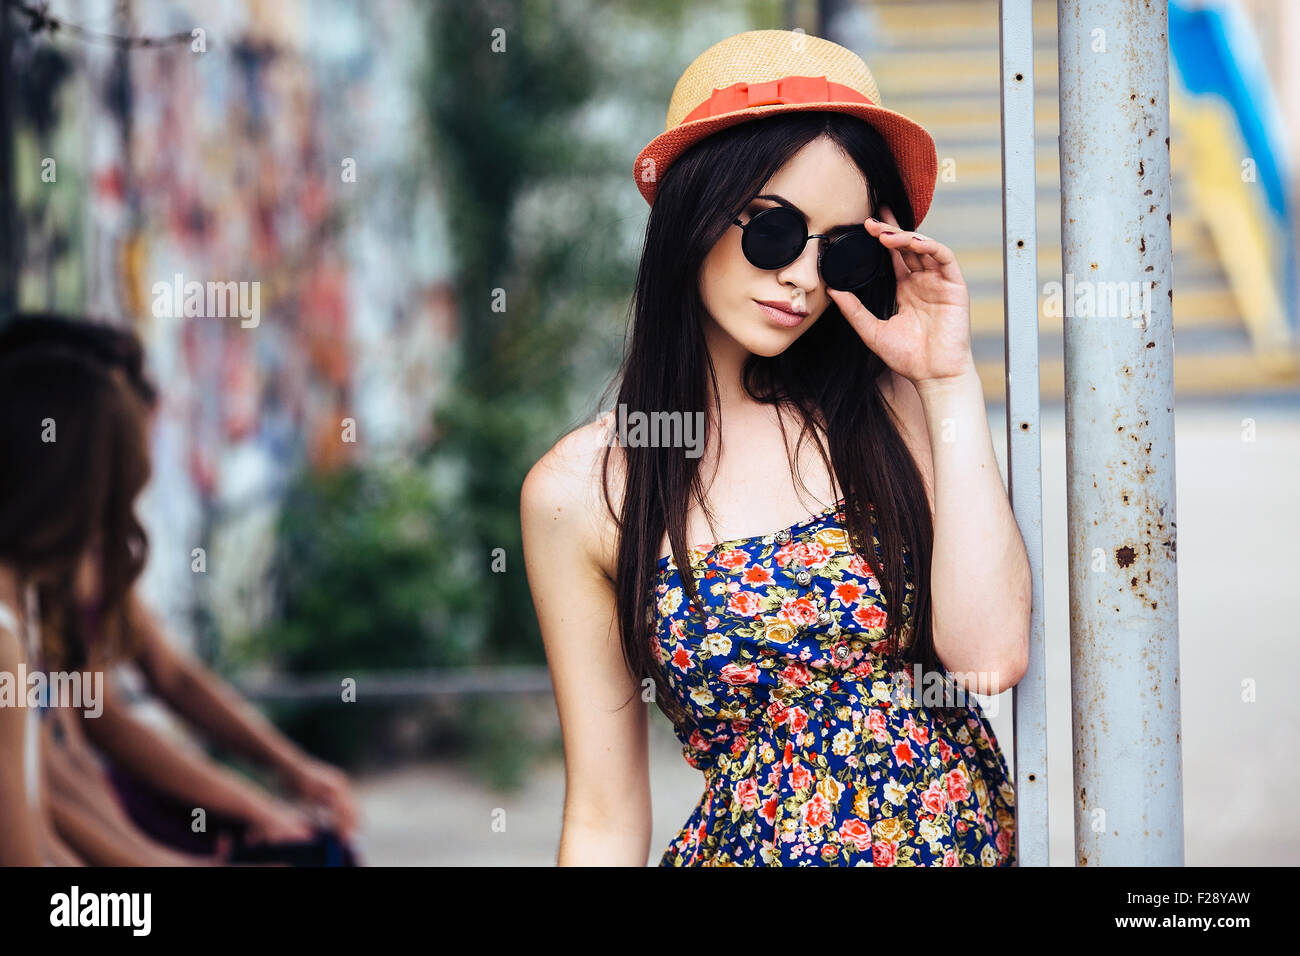 Woman Posing and Looking at camera · Free Stock Photo